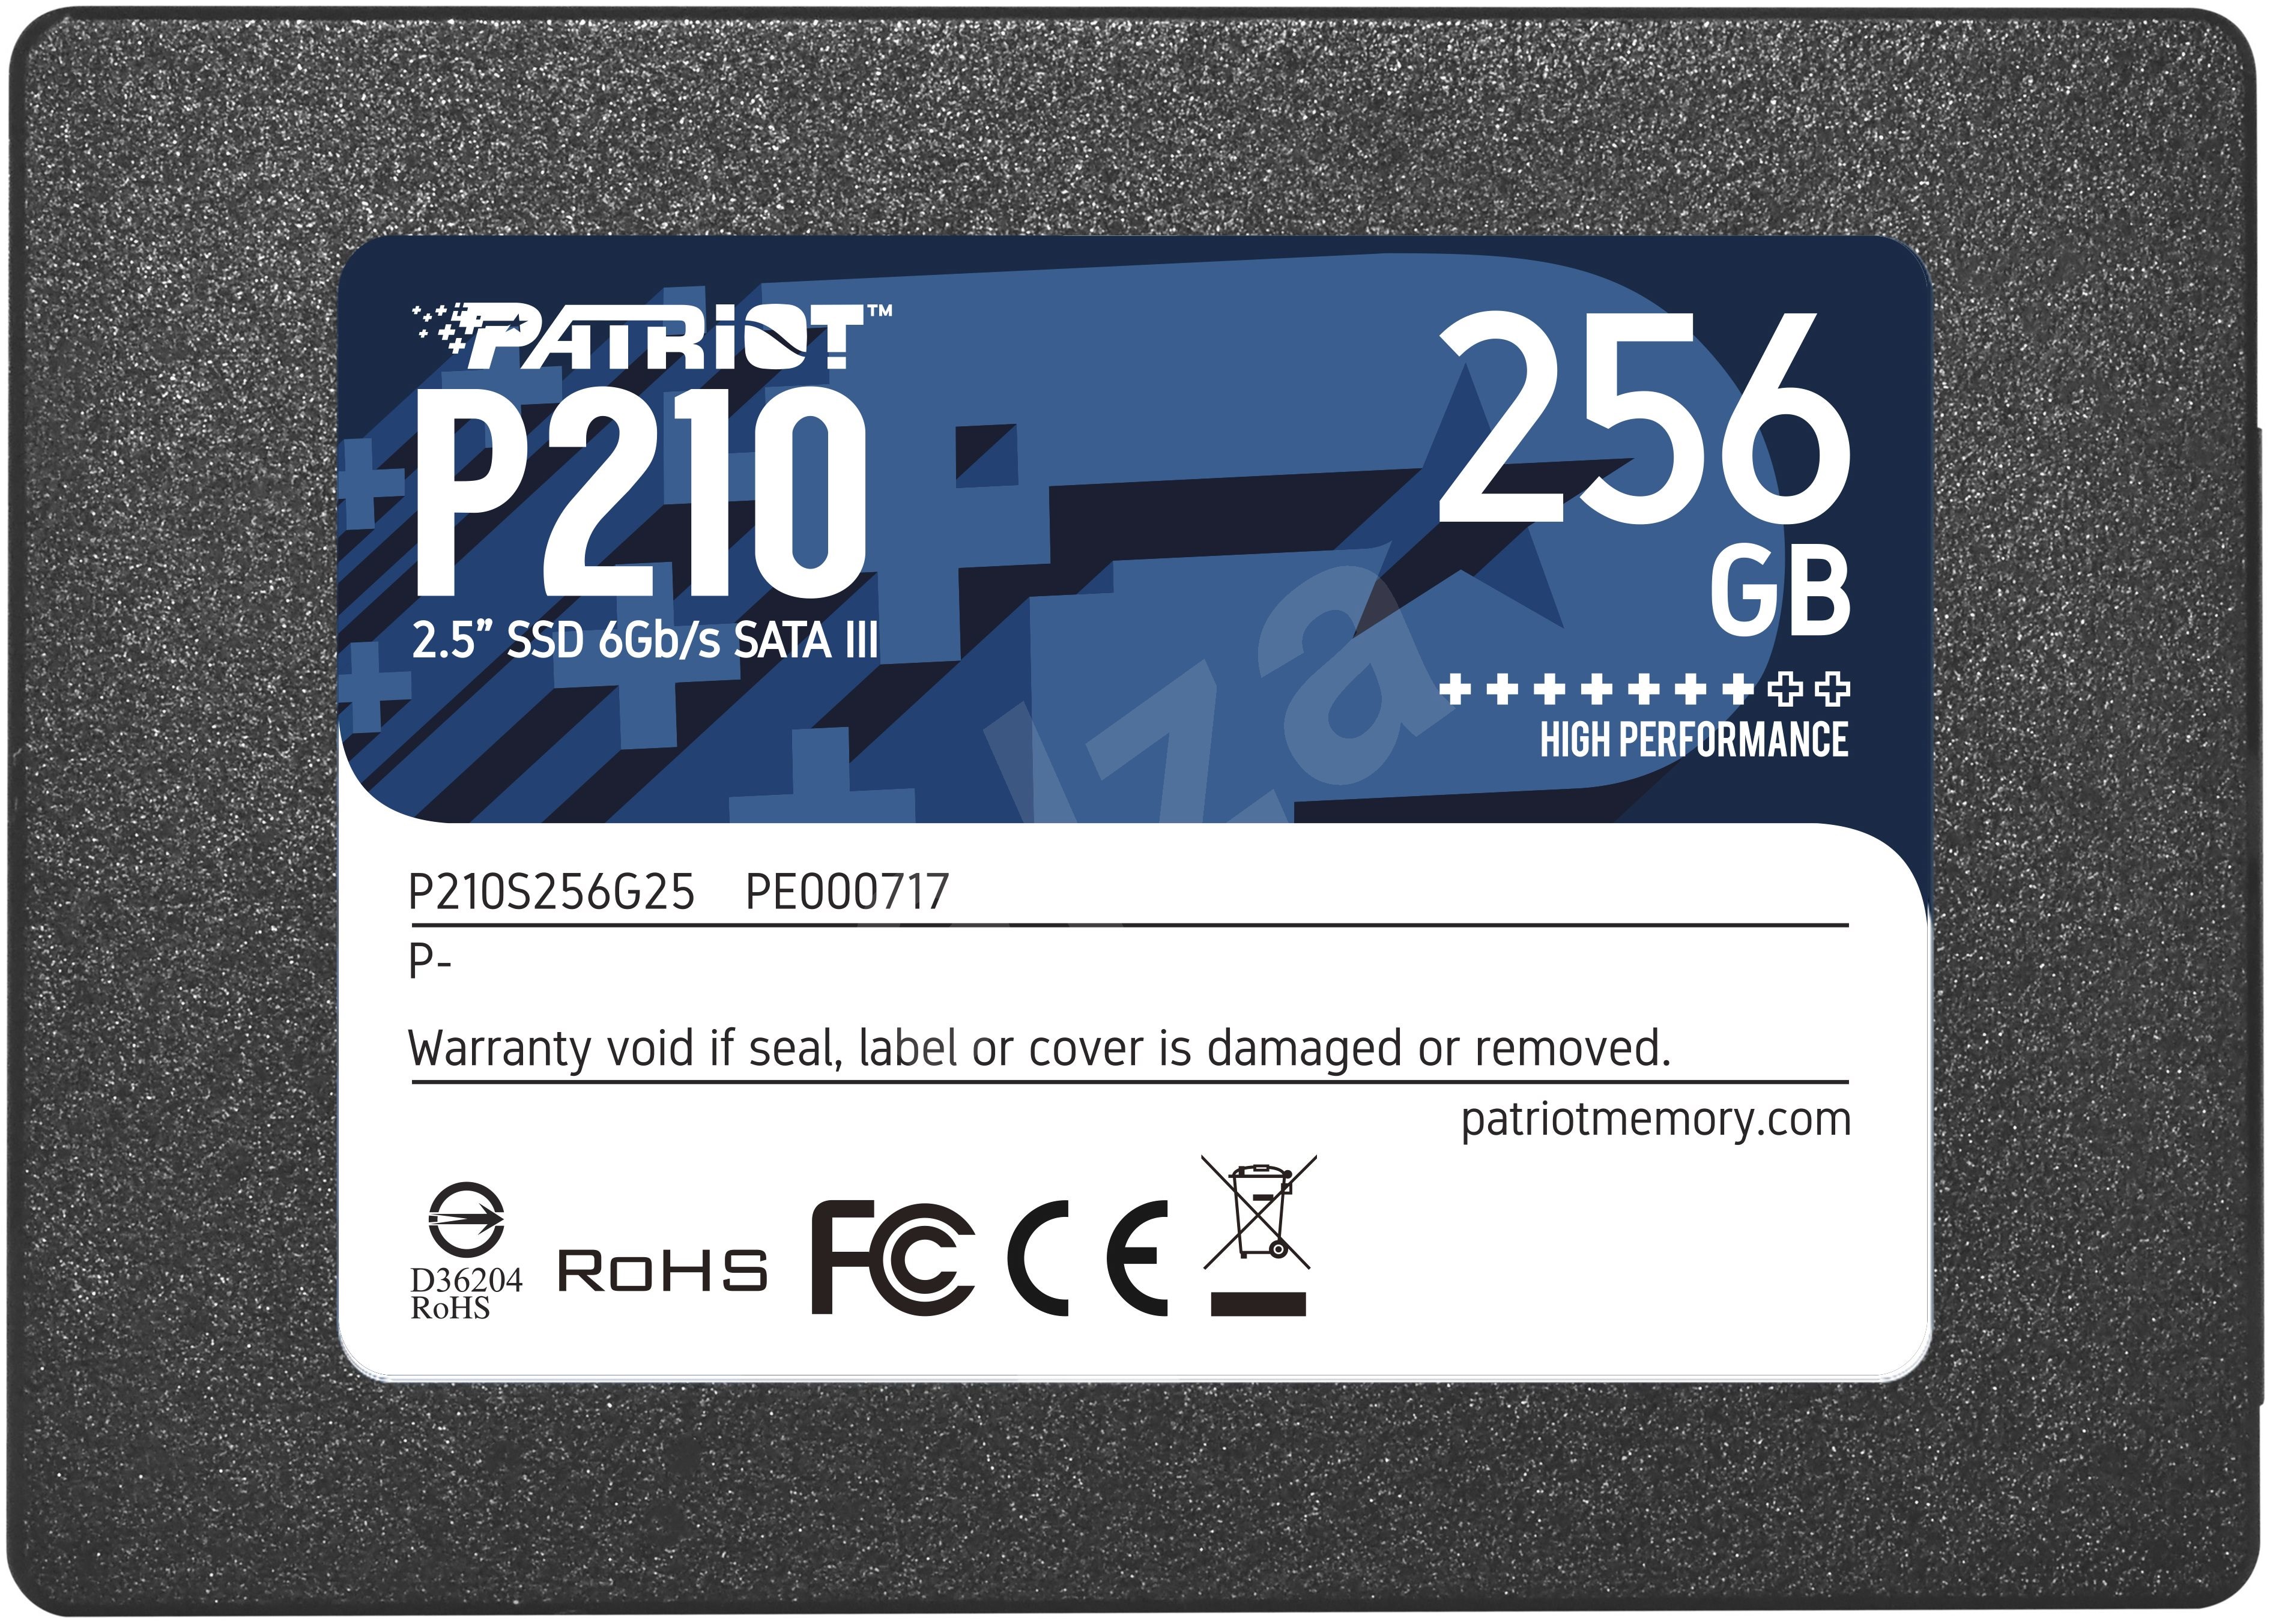 Patriot P210 256GB SSD drive